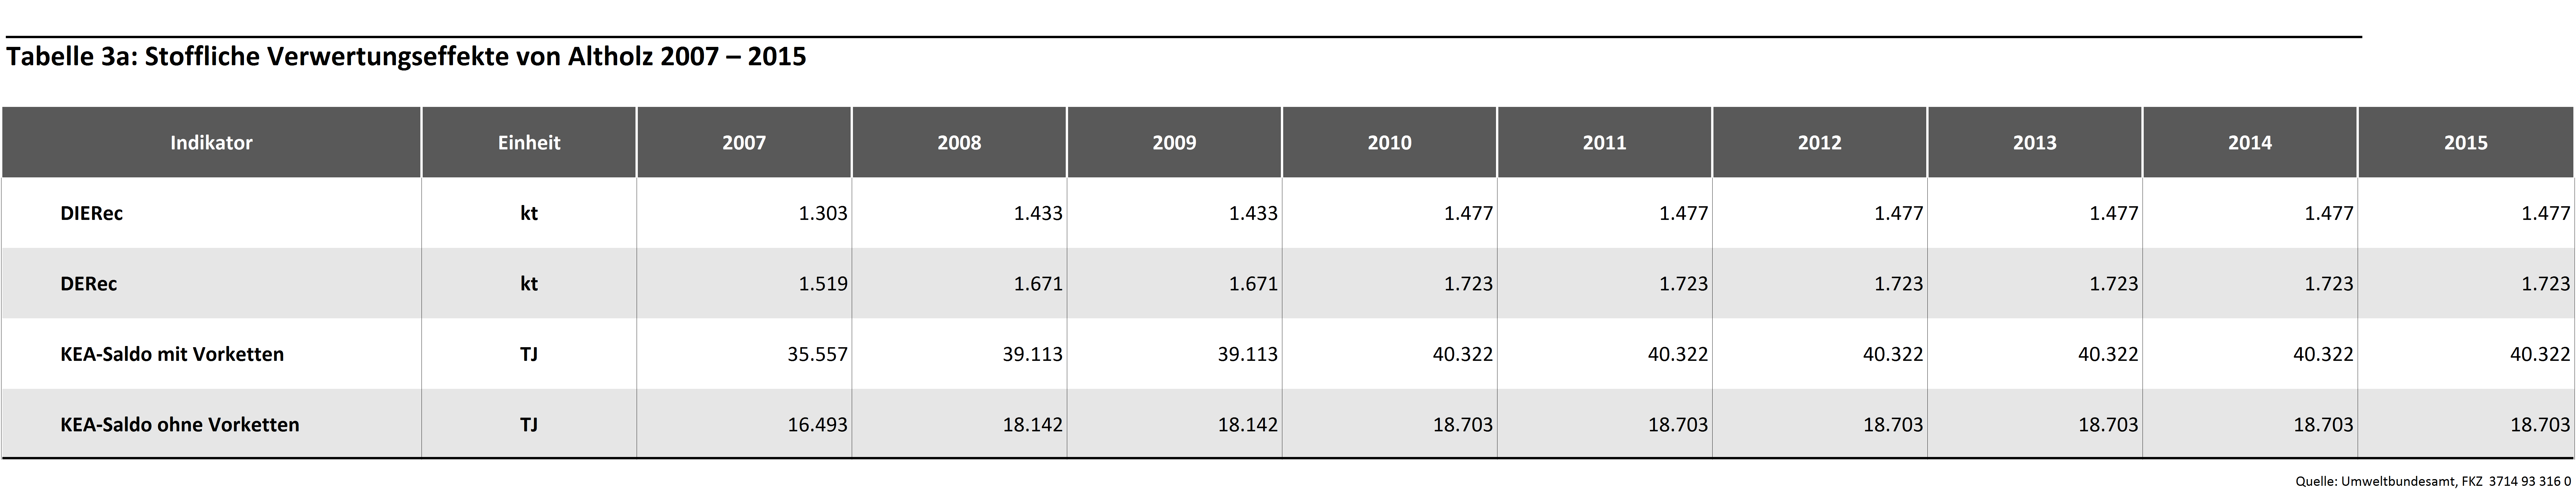 Tabelle 3a: Stoffliche Verwertungseffekte von Altholz 2007 – 2015